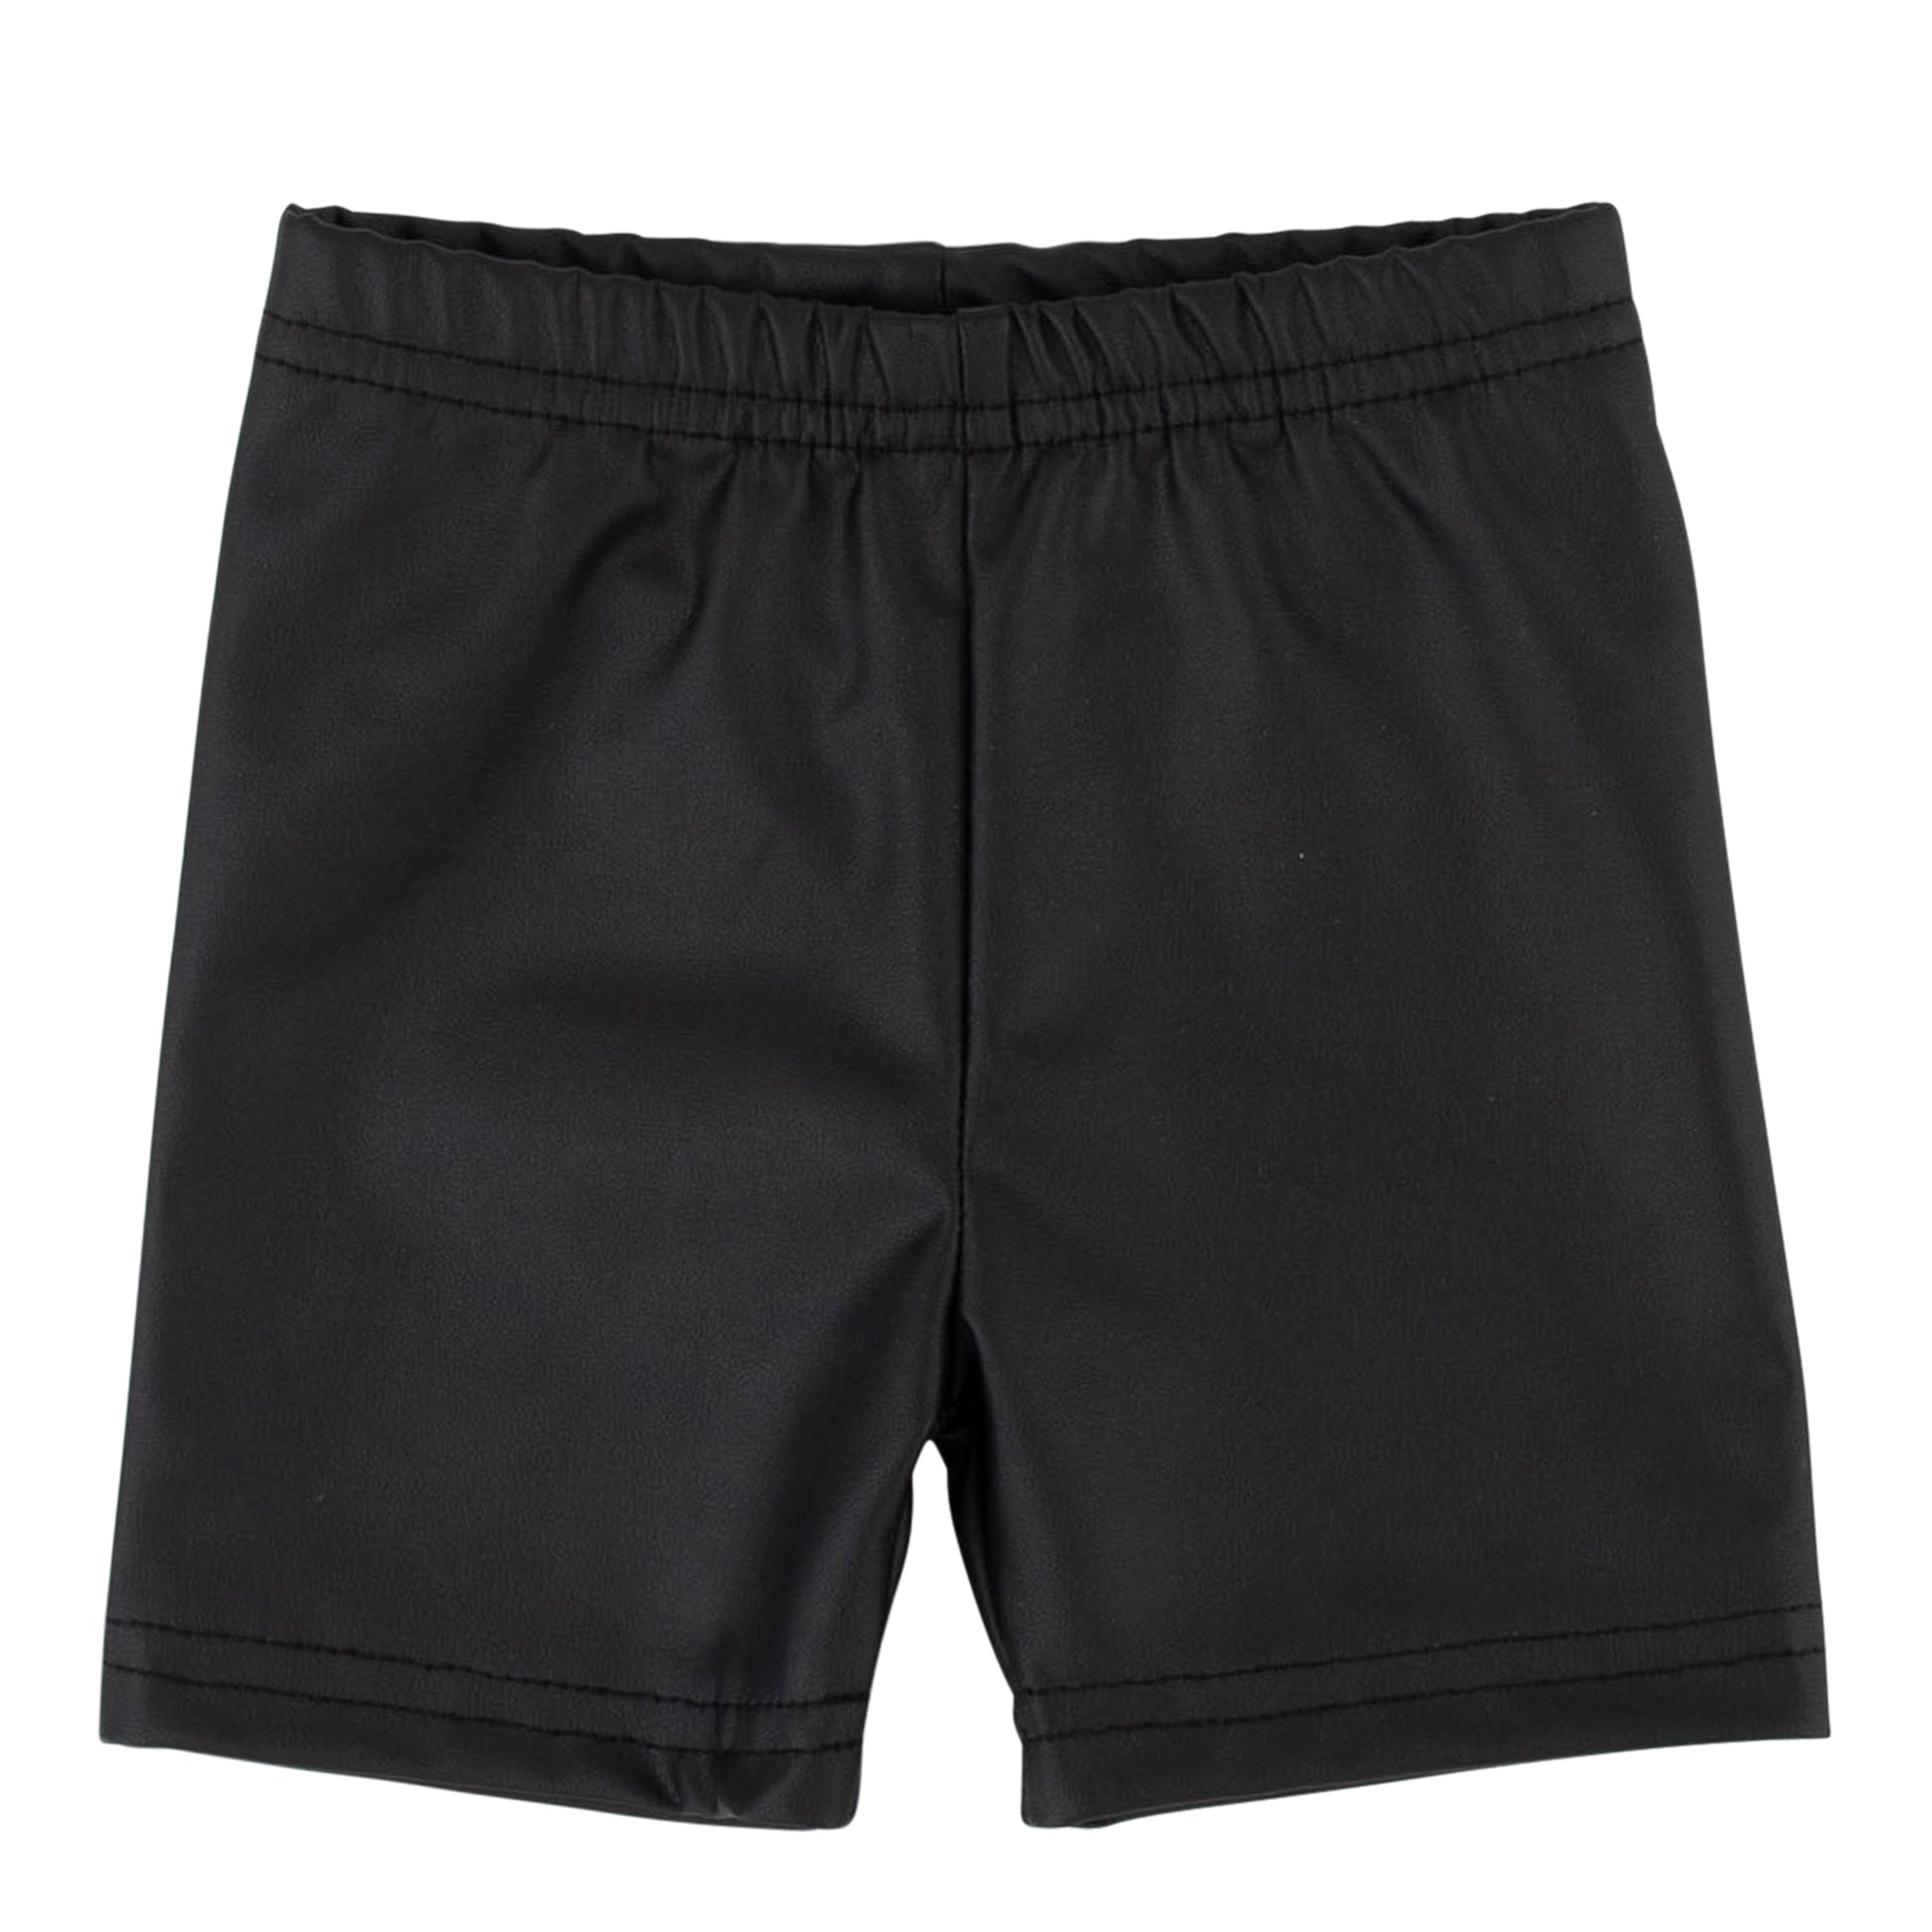 Leather shorts, Black - HoneyBug 